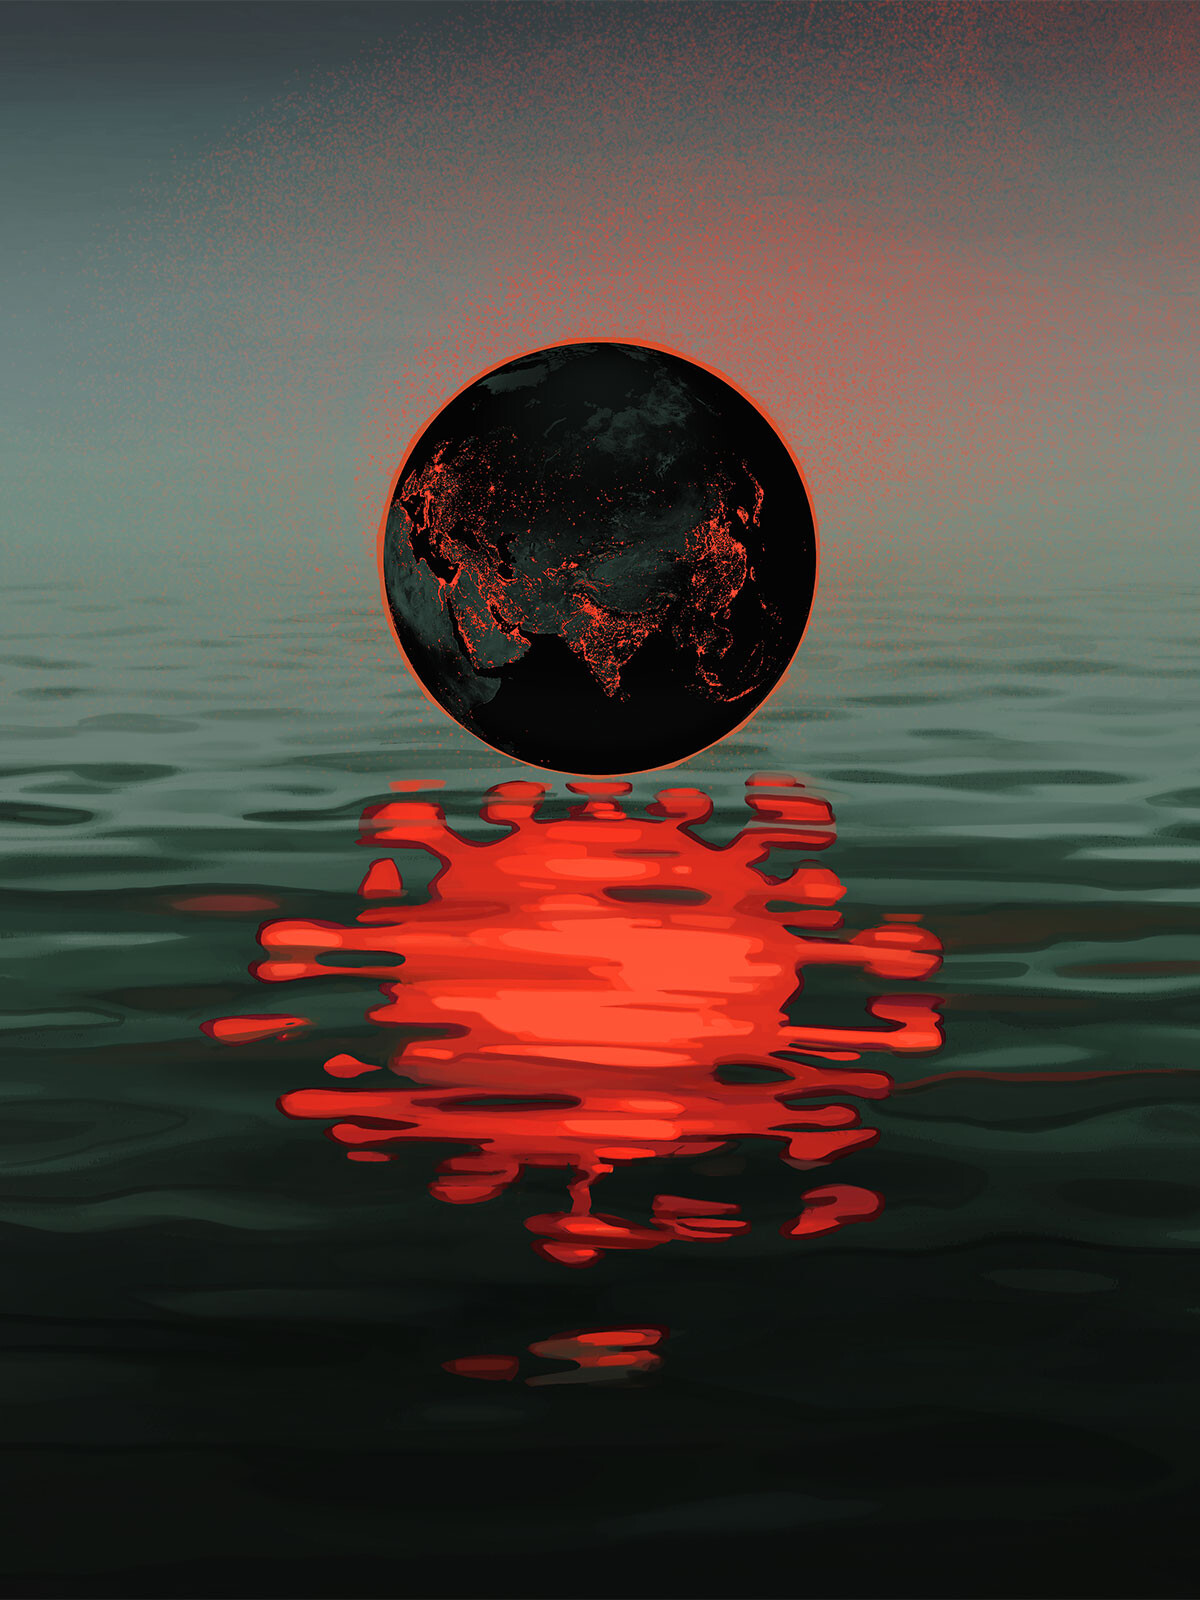 Earth reflected as a coronavirus